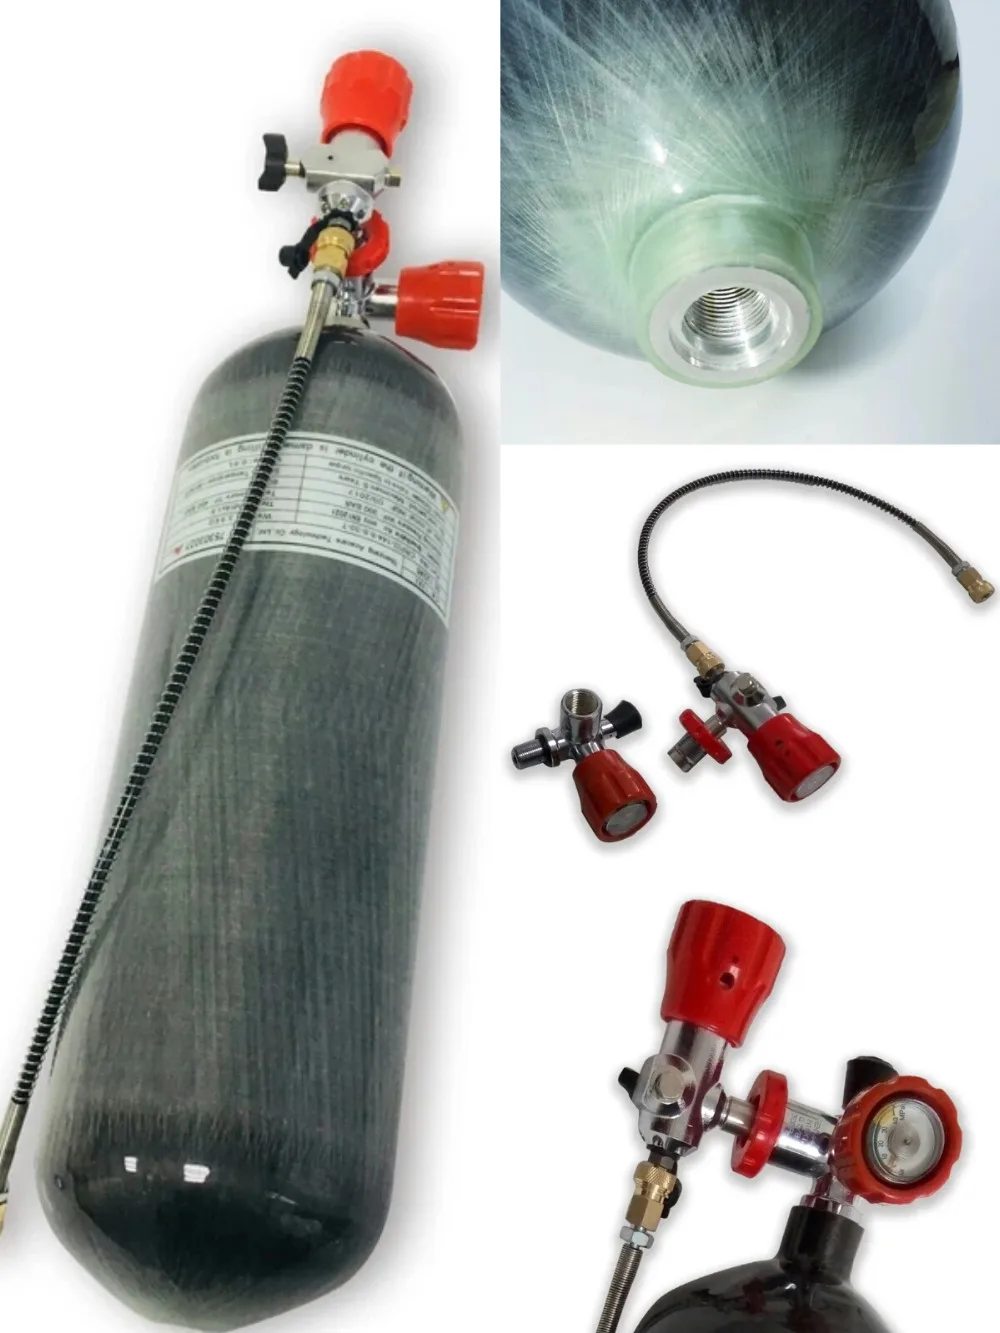 AC168101 6.8L 30Mpa высокого давления Пейнтбол Бак композитный углеродное волокно Воздушный бак PCP винтовка с красным клапаном АЗС